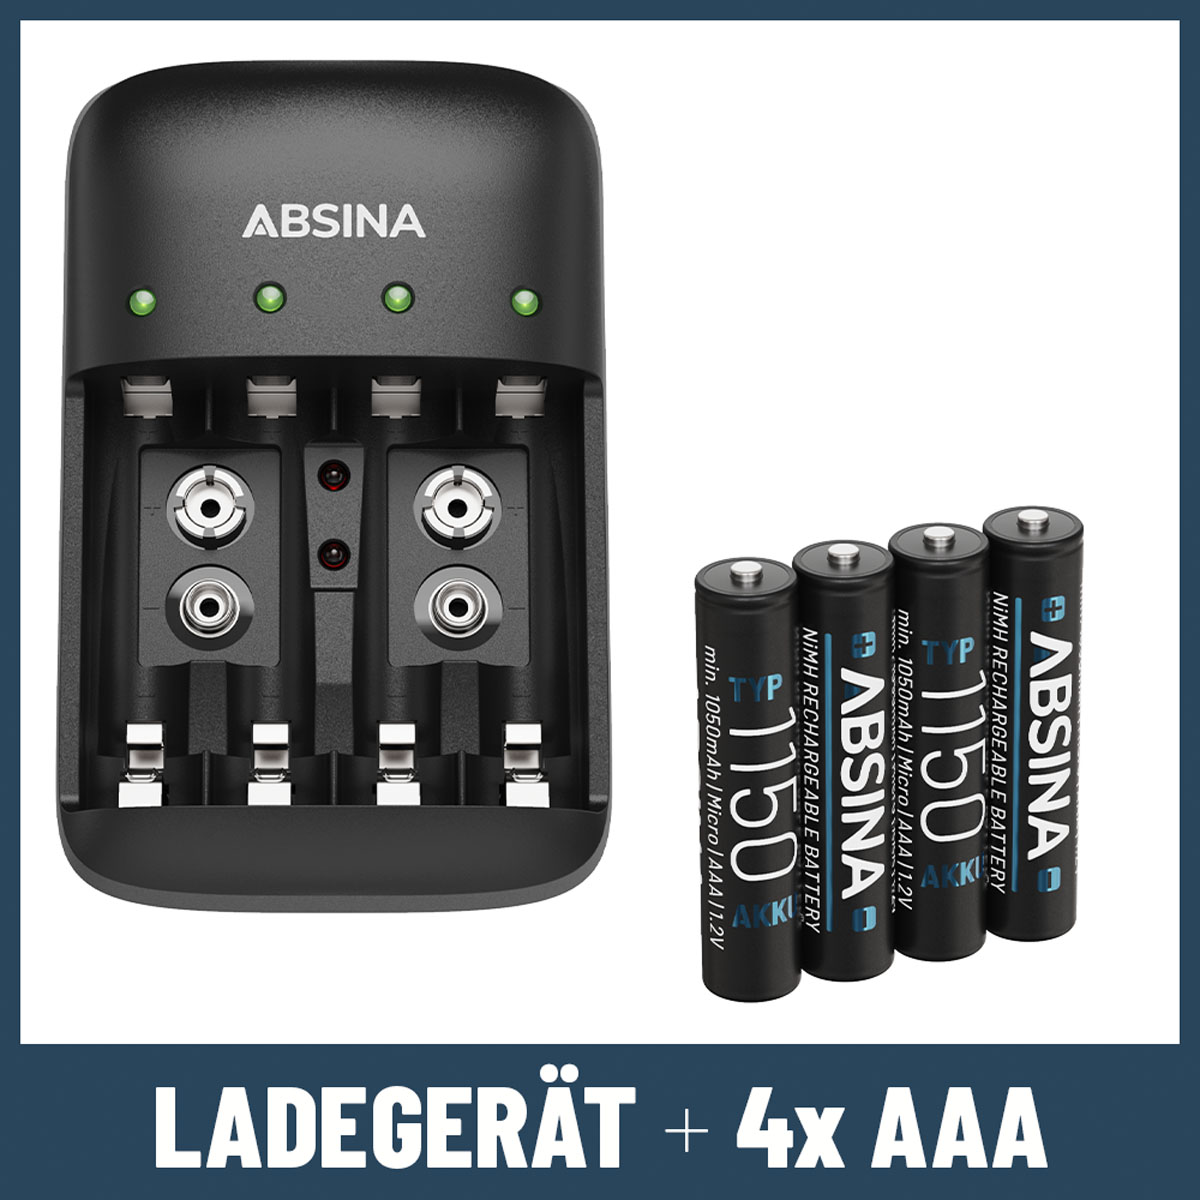 ABSINA Ladegerät X4 für 4x AAA Akkus Ladegerät Universal, inkl. Typ 9V Micro schwarz & AA, 1150 AAA 